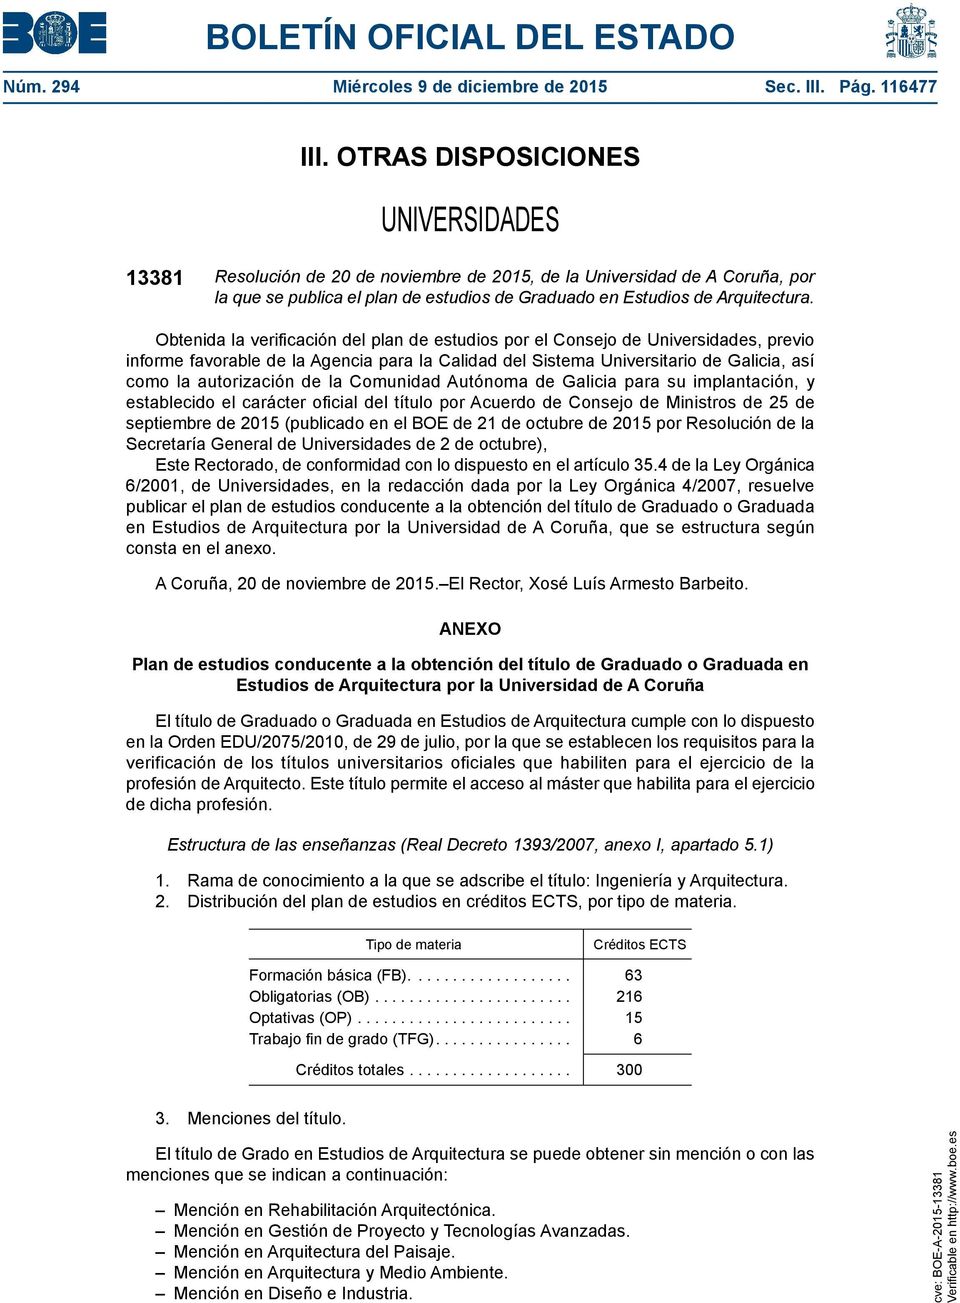 Obtenida la verificación del plan de estudios por el Consejo de Universidades, previo informe favorable de la Agencia para la Calidad del Sistema Universitario de Galicia, así como la autorización de